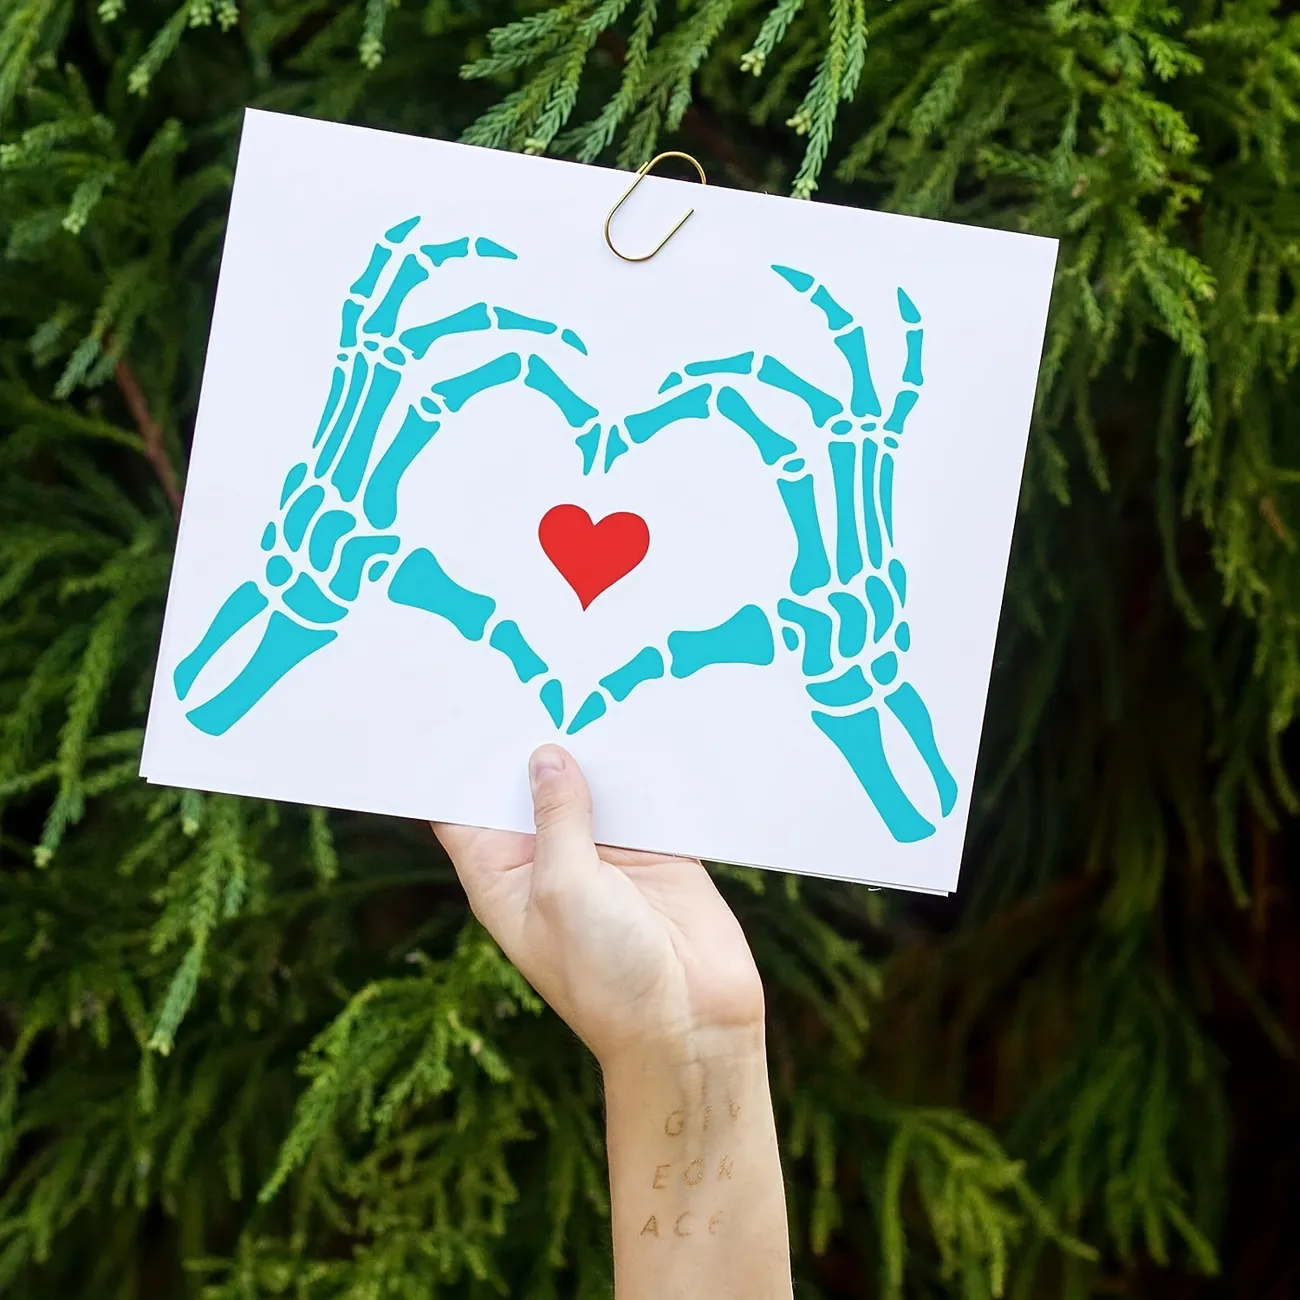 Skeleton Hands - Heart - Stencil